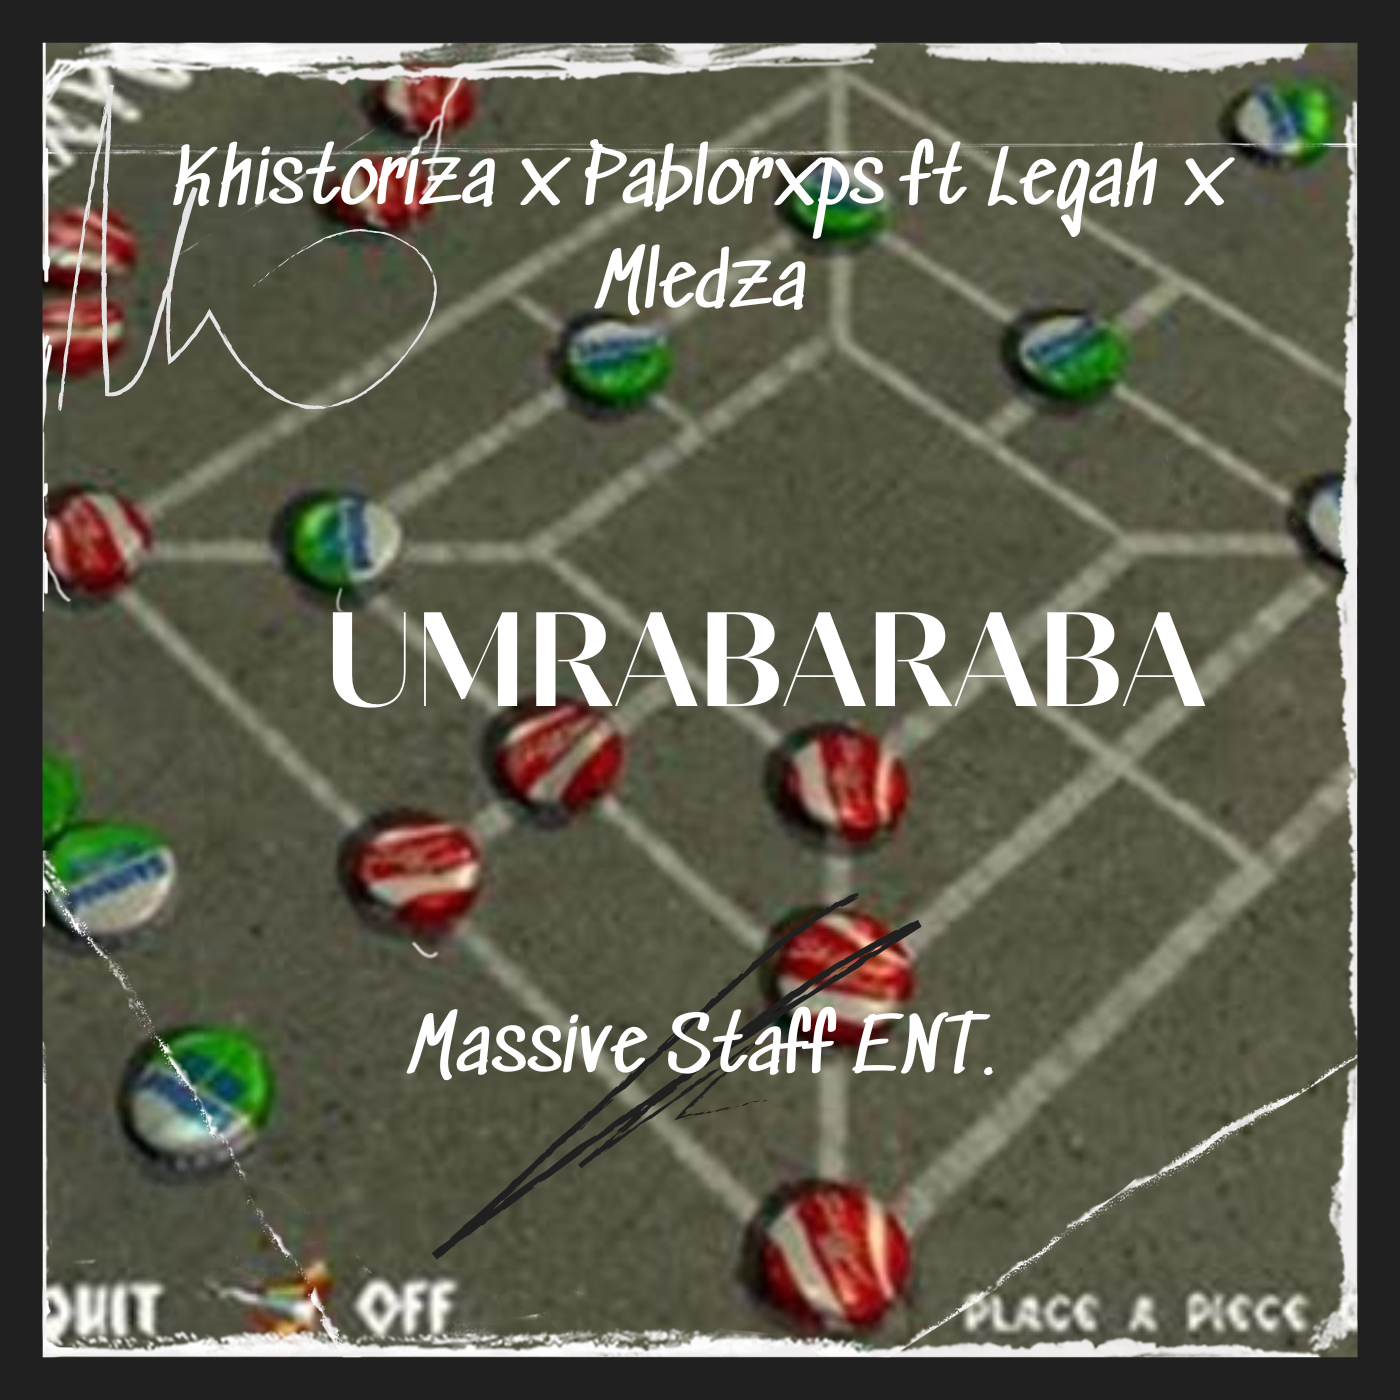 Umraba-raba - Khistoriza × PabloRxps ft Legah × Mledza(MCL)